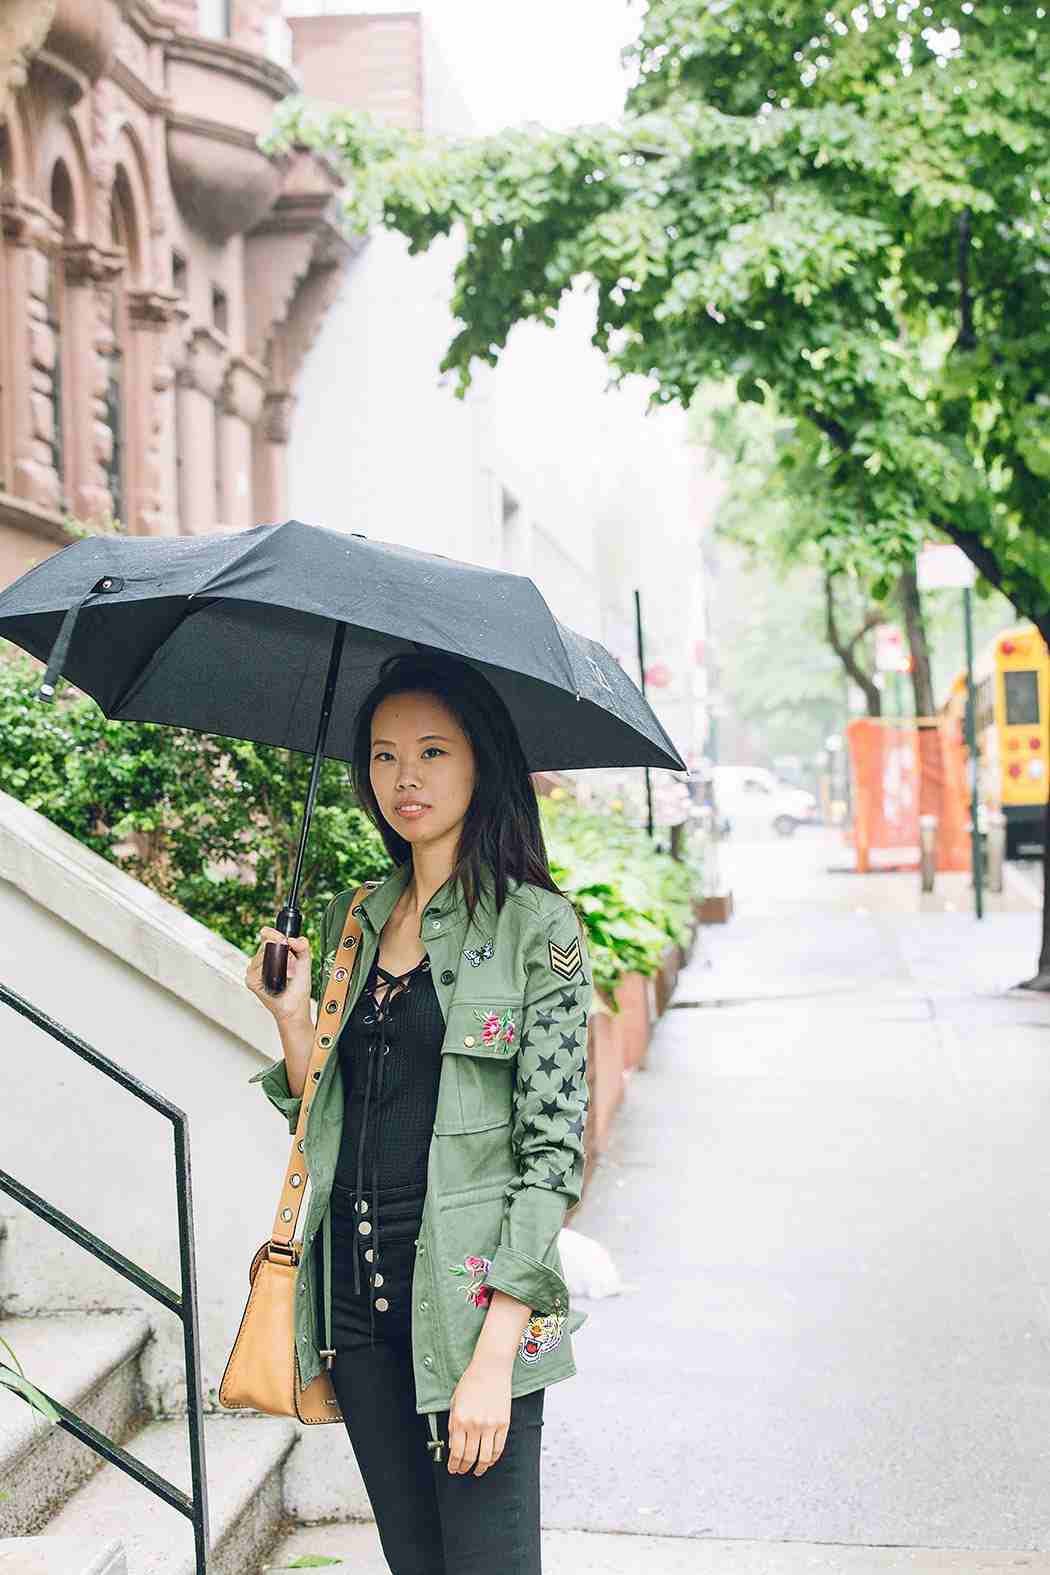 Anregung für die Regenbekleidung für Damen in Schwarz und Khaki